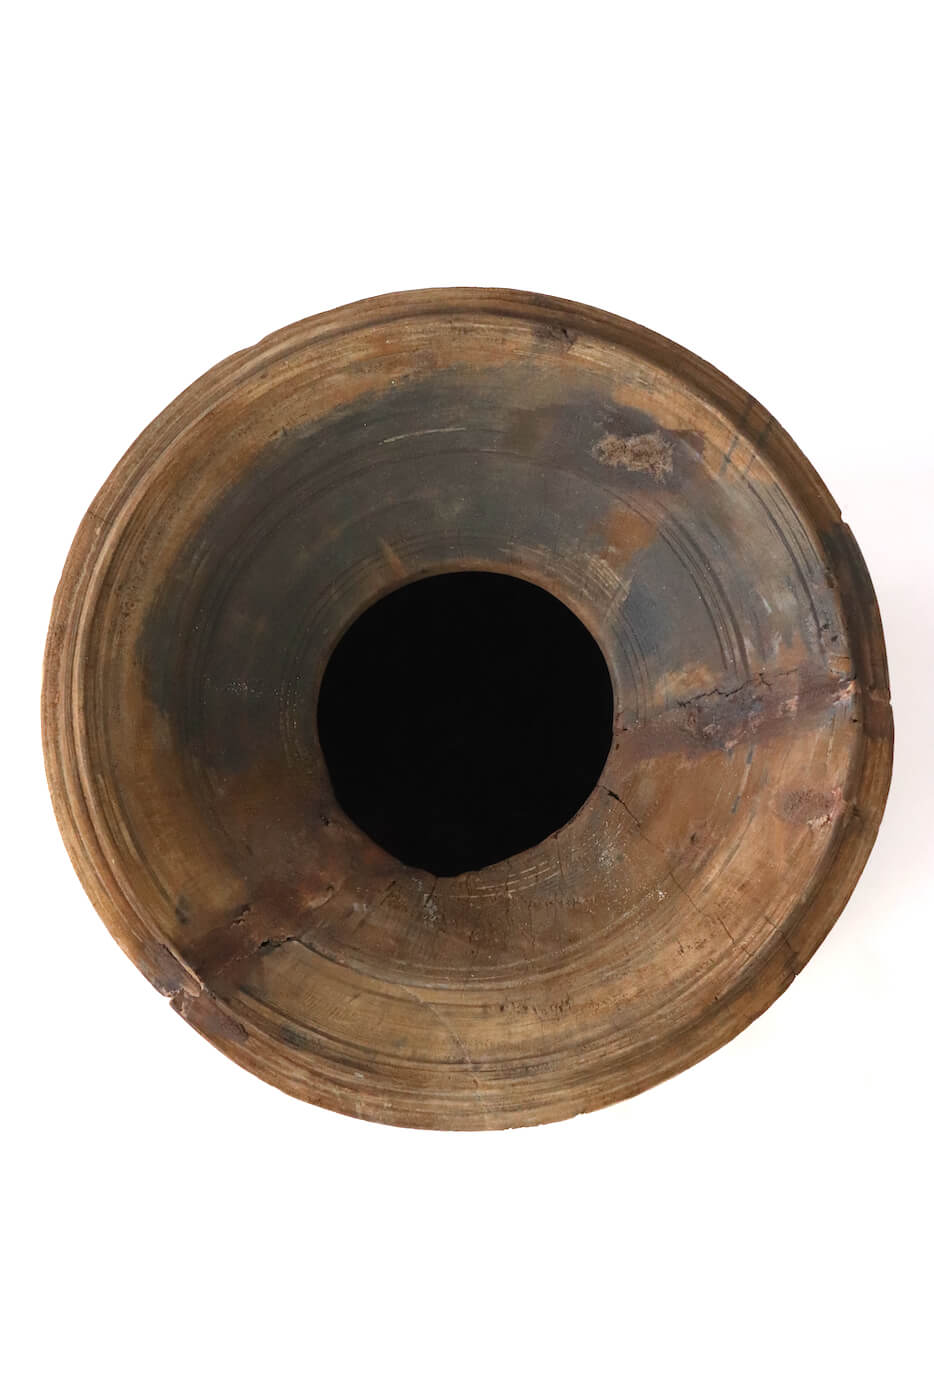 Großer Nepal Pott aus Holz antik, 39xø30